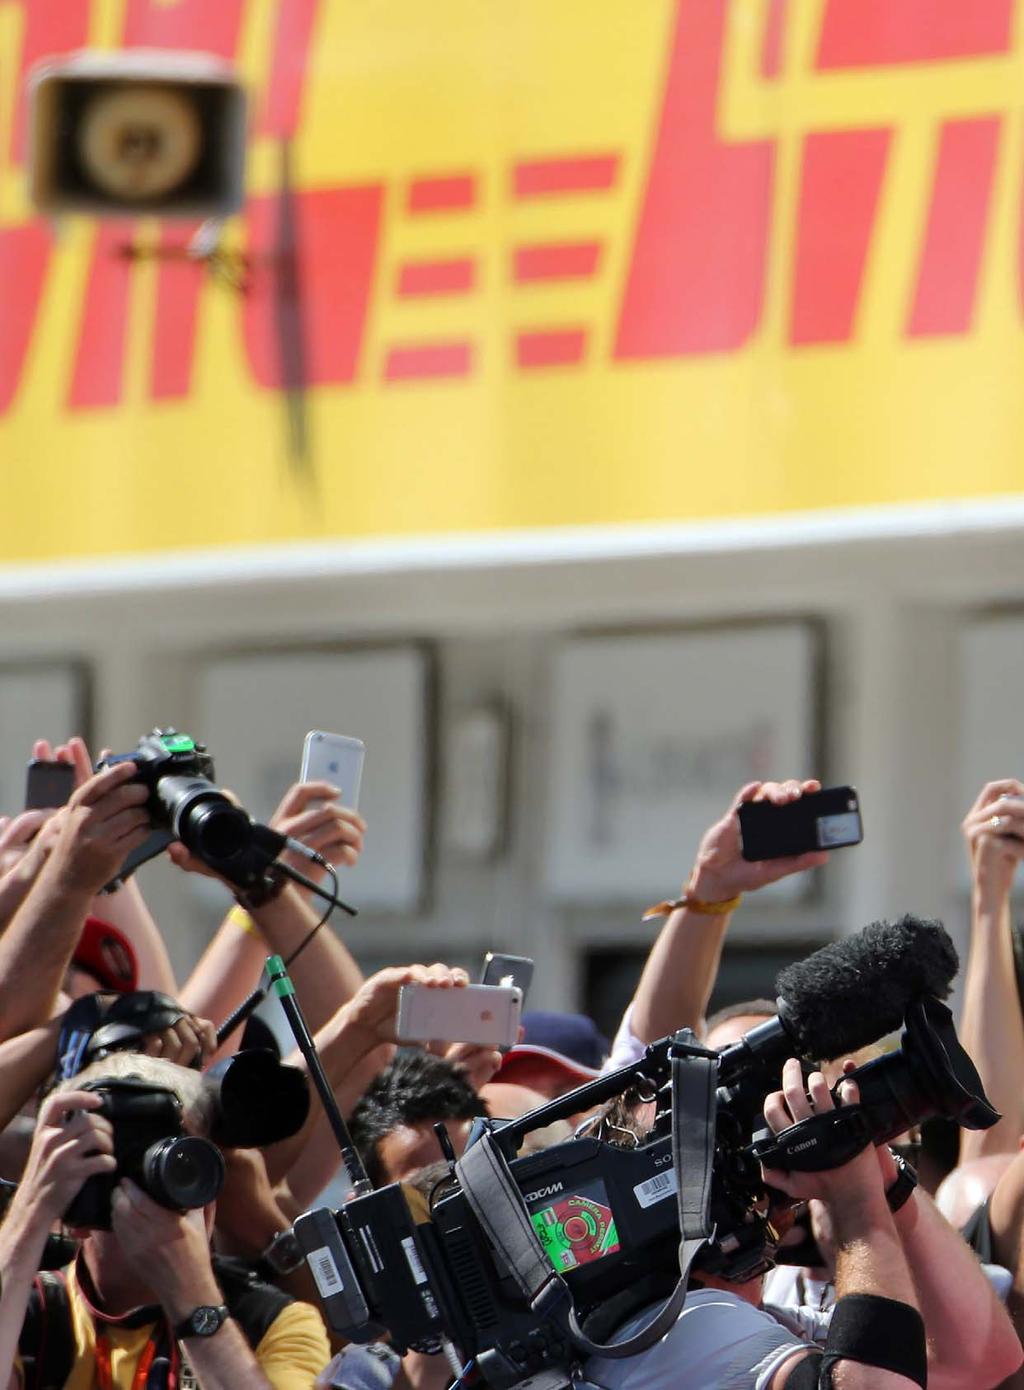 FORMULA GP UNGHERIA 1 Stoffel Ferrari Vandoorne Vettel, prove tecni di futuro Il successo della Ferrari è stato agevolato dalla giornata nera della Mercedes, ma quest'anno per la Rossa